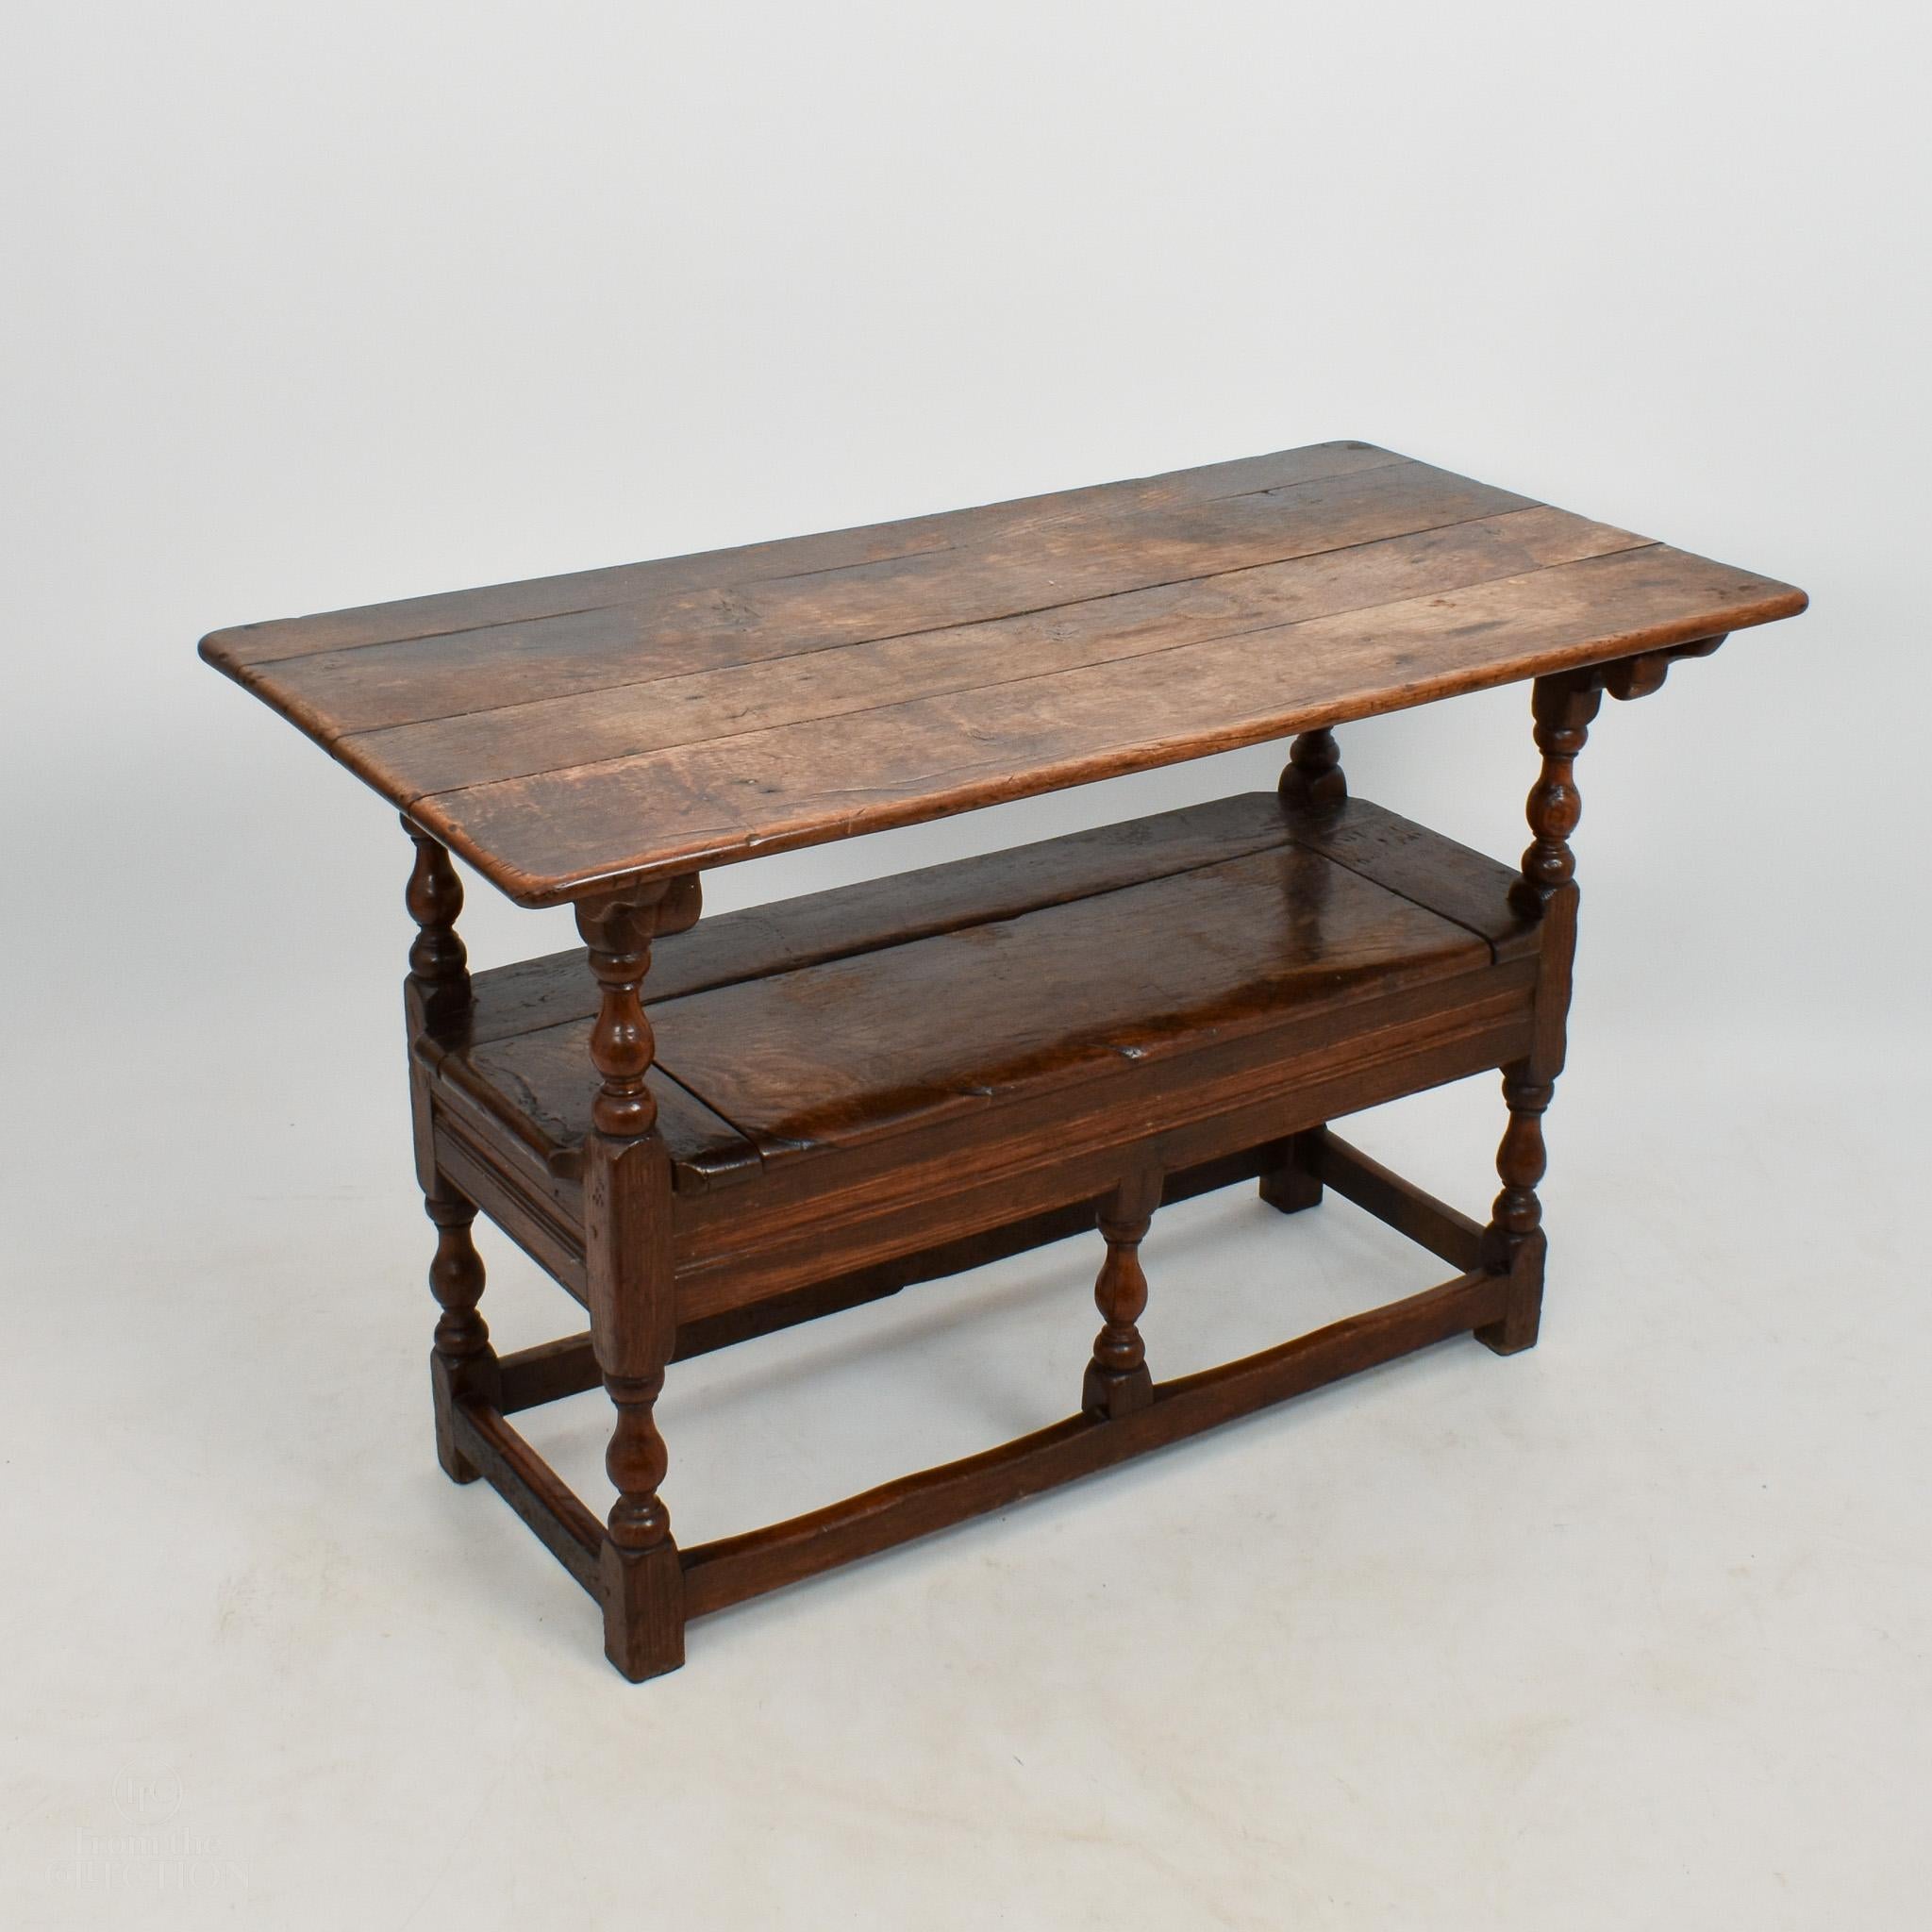 Banc de moine en chêne vers 1760 qui devient une table. En état d'origine avec de belles couleurs. Le siège se soulève pour être rangé. Avec six pieds tournés et des balustrades jointives avant et arrière. Des marques sur la surface et le banc